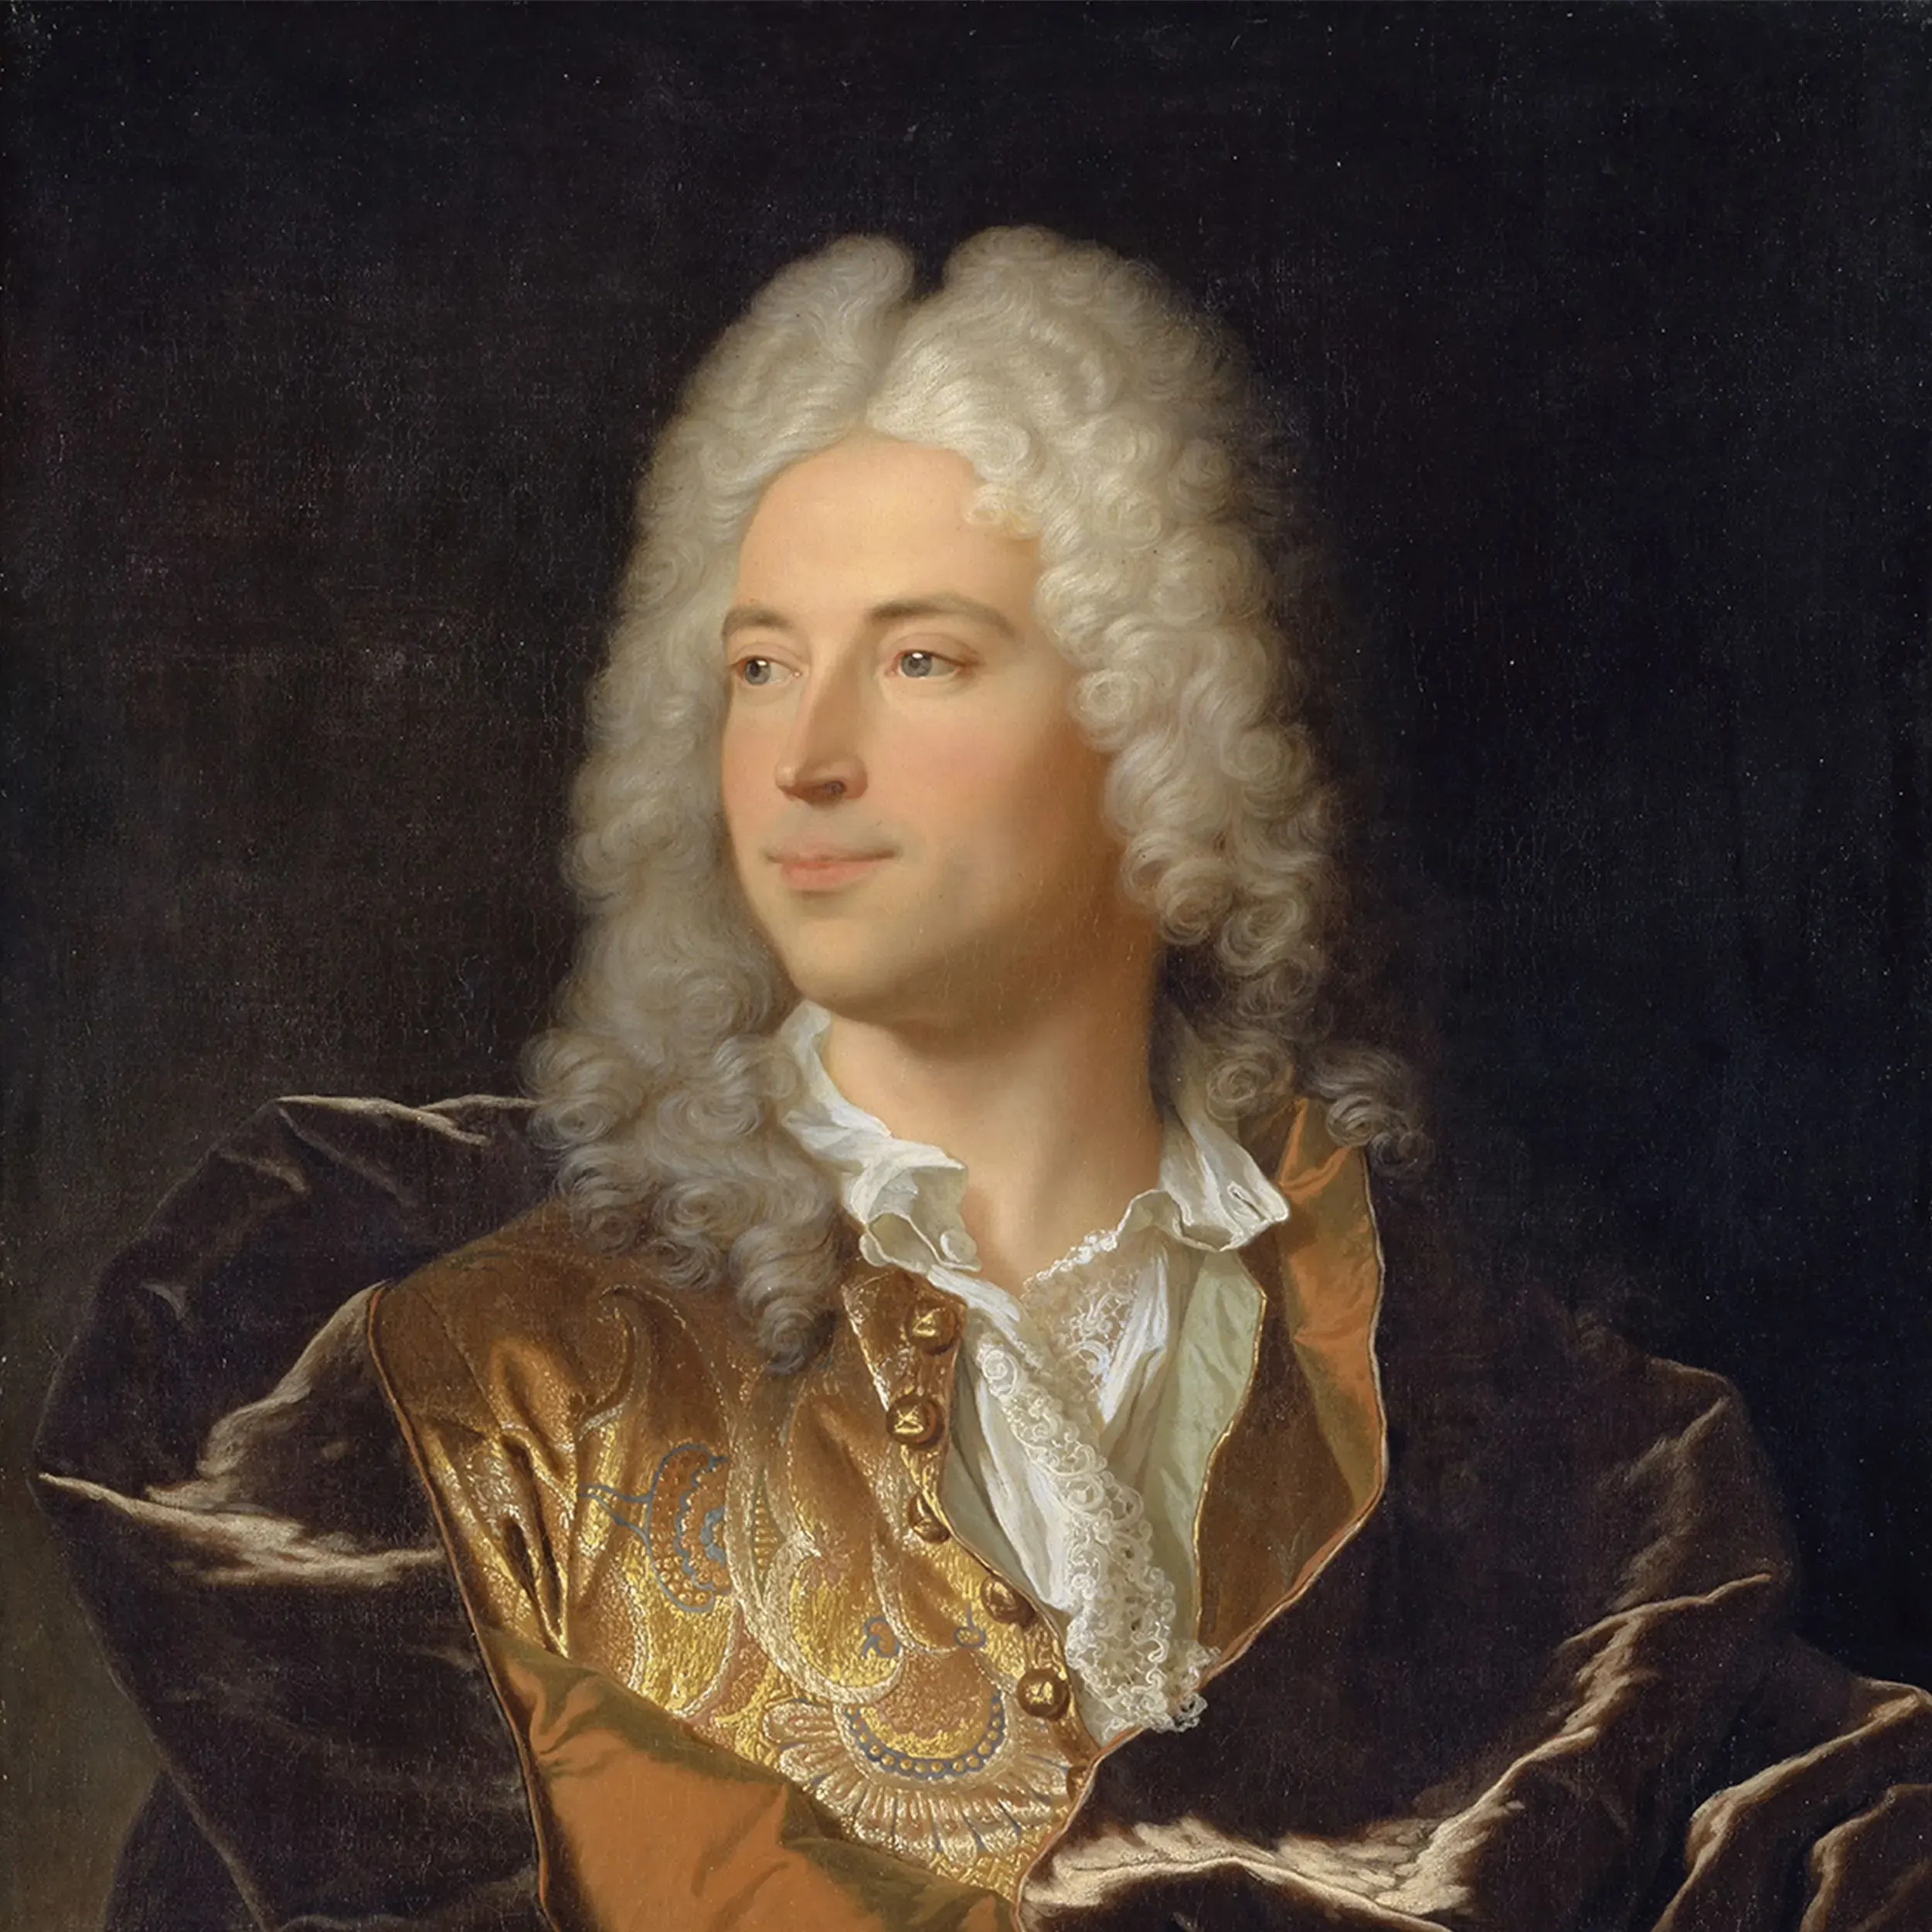 Sir Lukas Schaub, gemalt von Hyacinthe Rigaud (1659–1743)